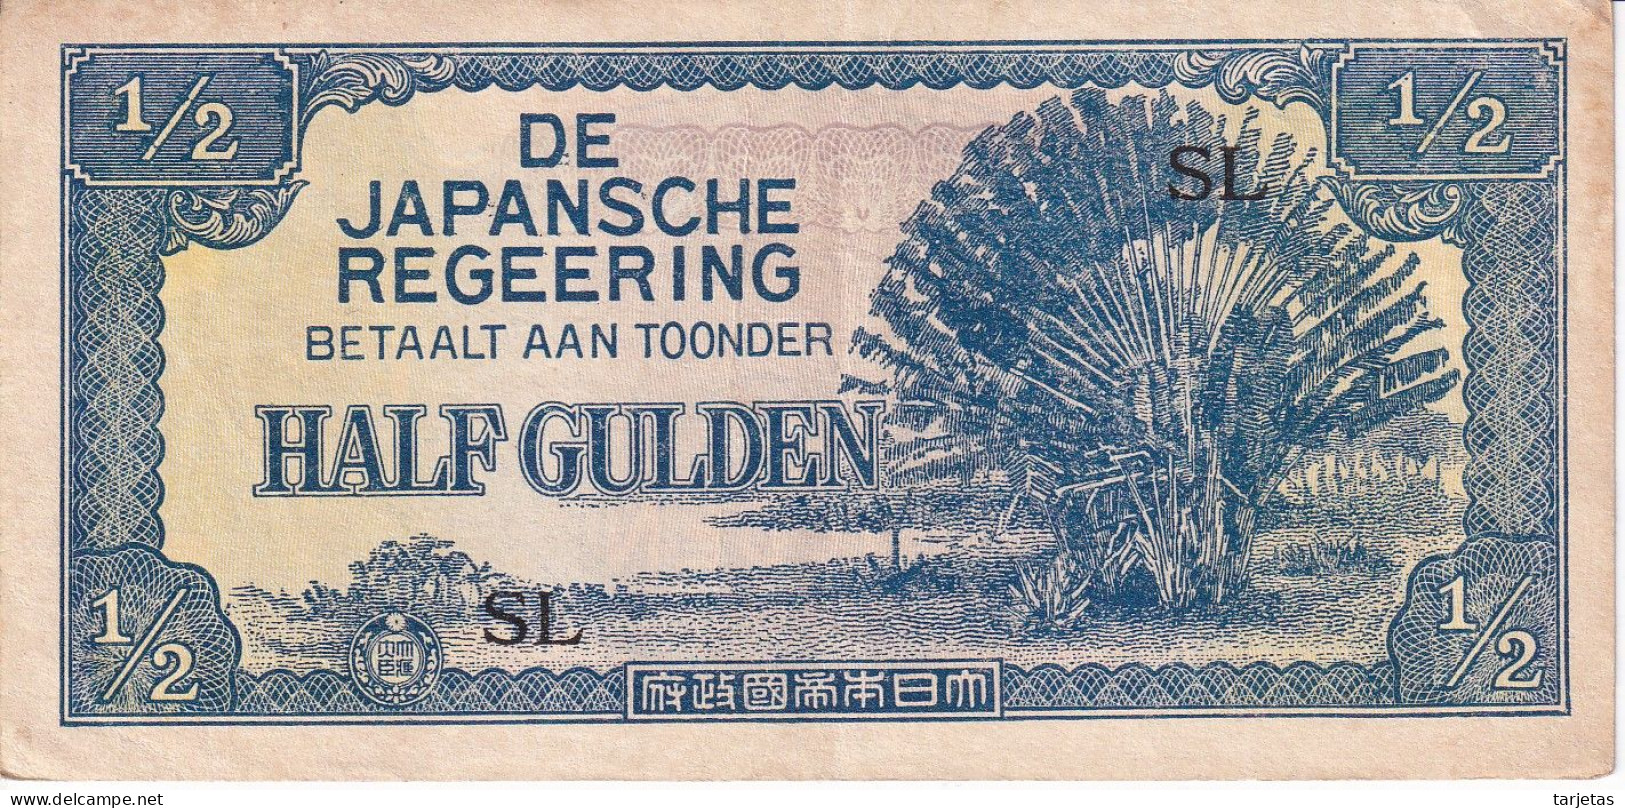 BILLETE DE JAPANSCHE REGEERING DE 1/2 GULDEN DEL AÑO 1942  (BANKNOTE) - Indes Neerlandesas